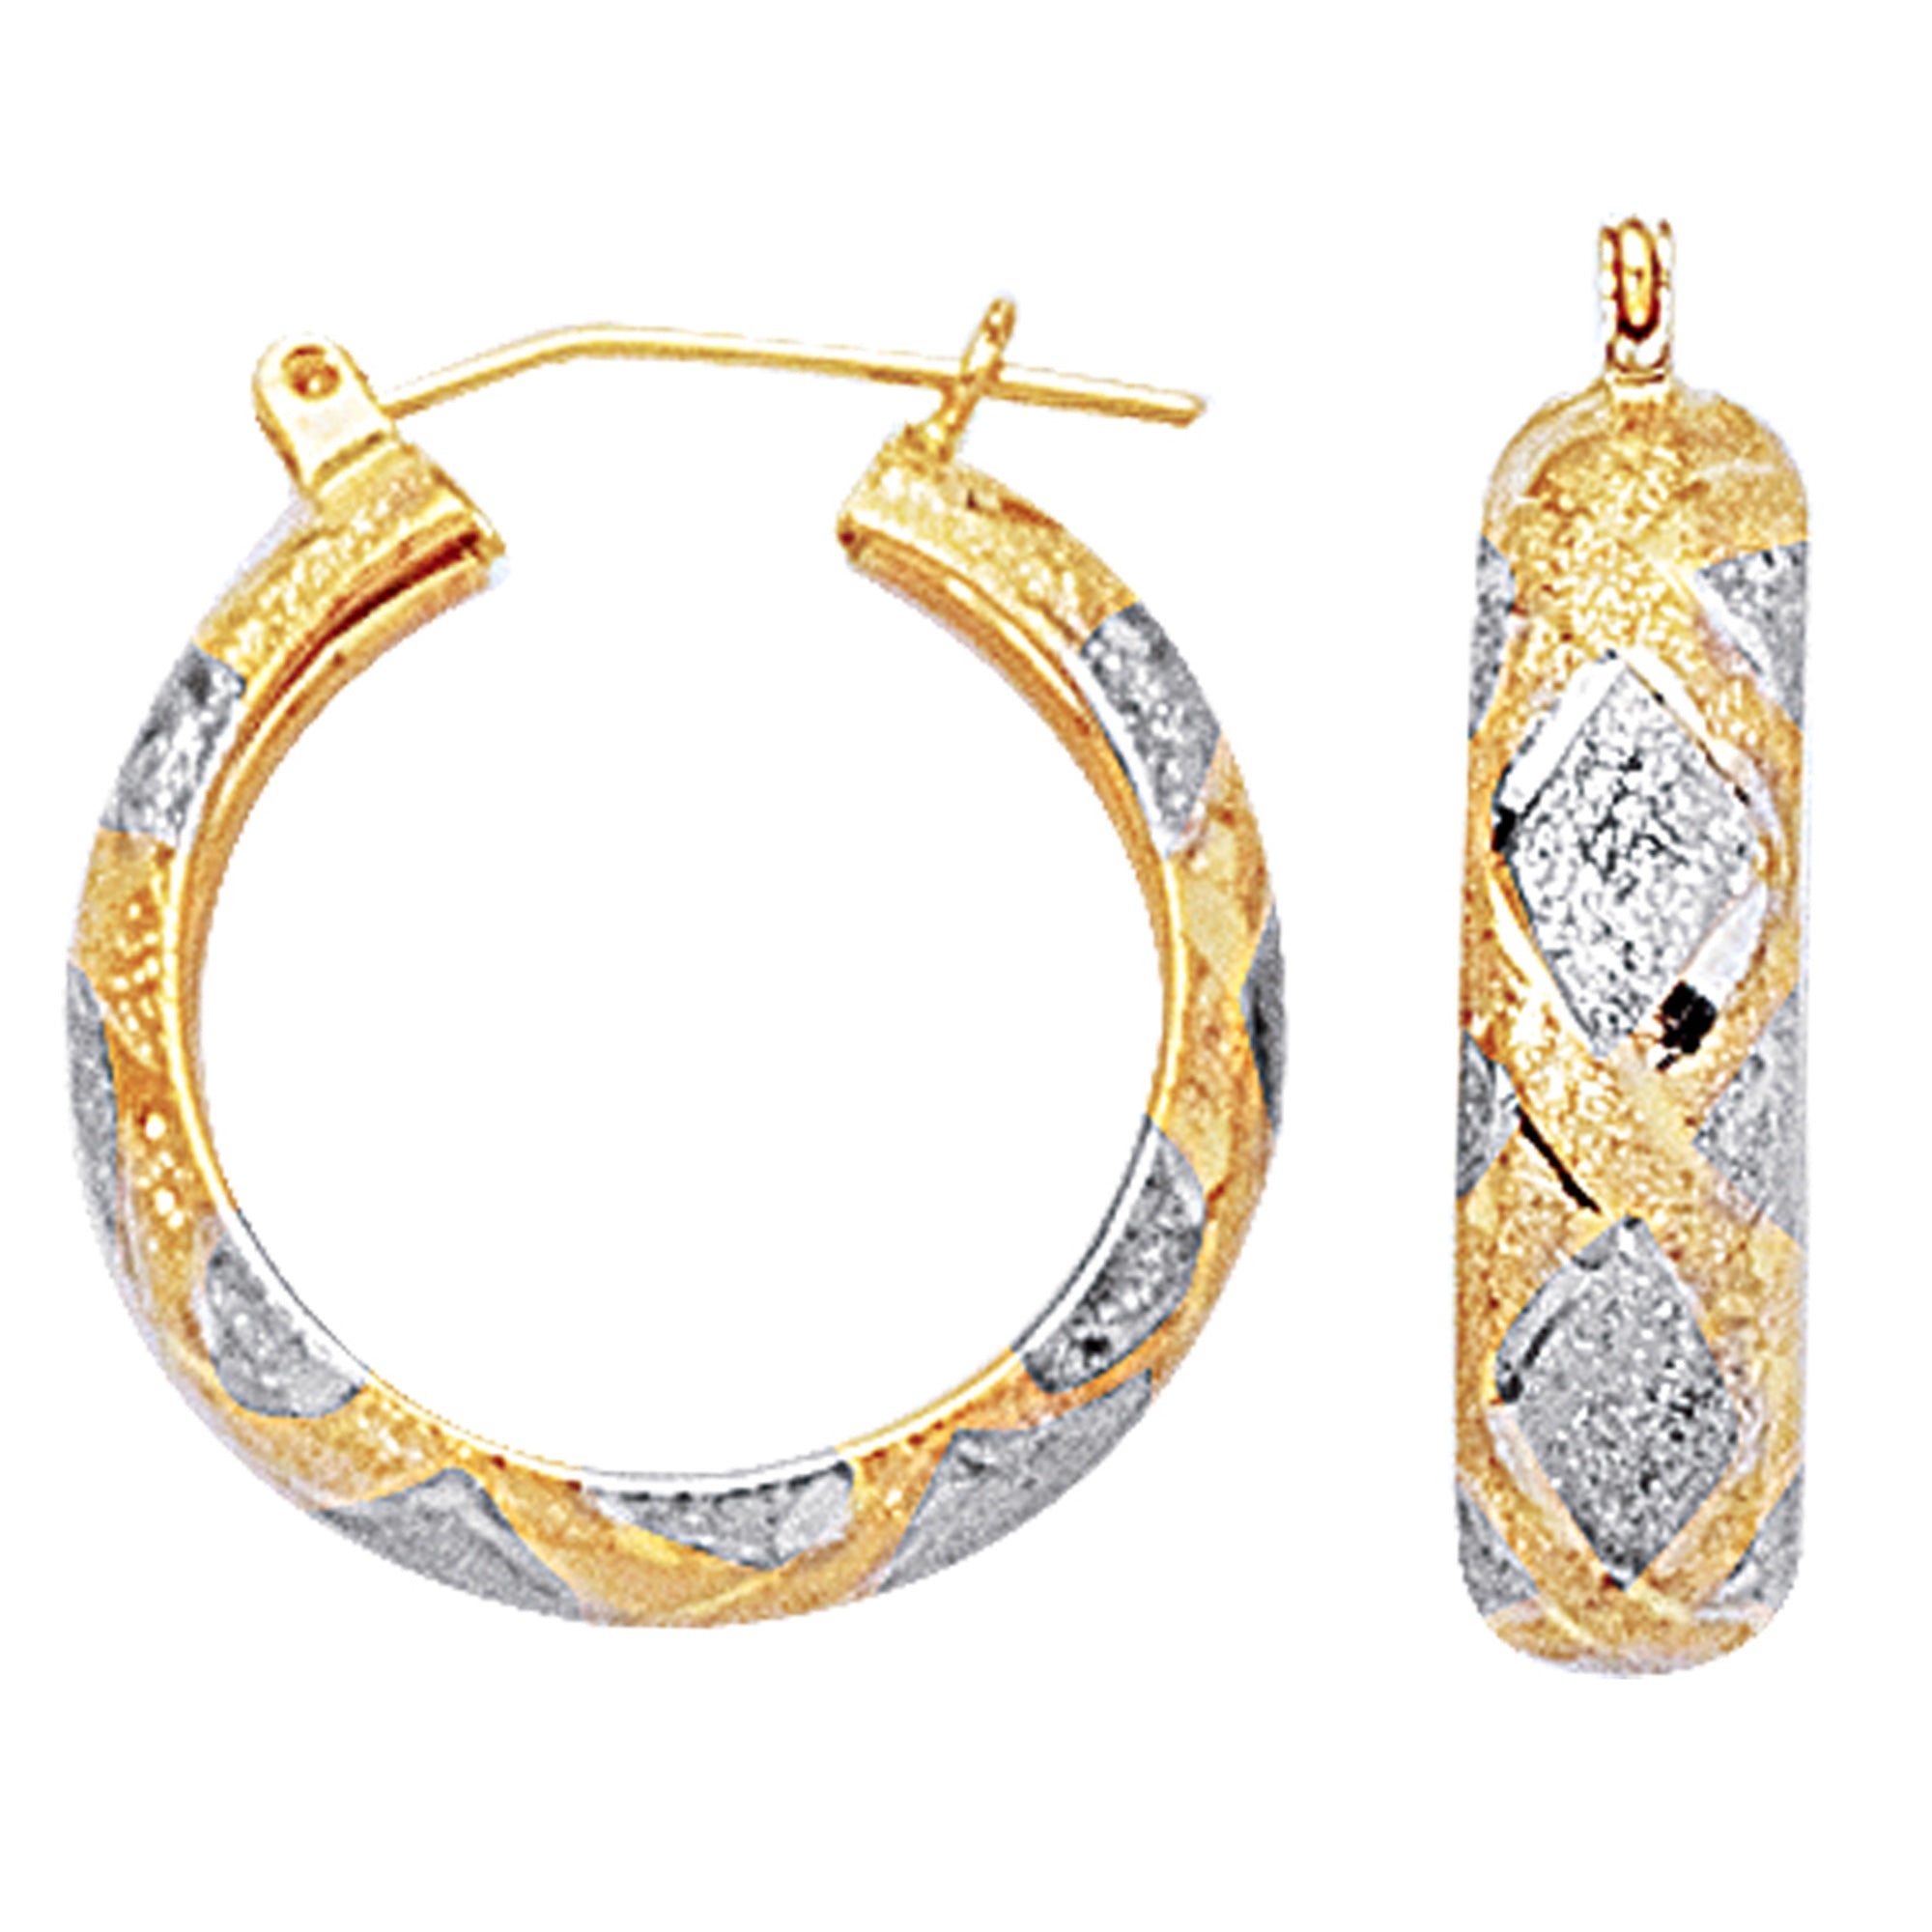 Pendientes de aro redondos texturizados con corte de diamante en oro blanco y amarillo de 10 quilates en 2 tonos, joyería fina de diseño de 22 mm de diámetro para hombres y mujeres